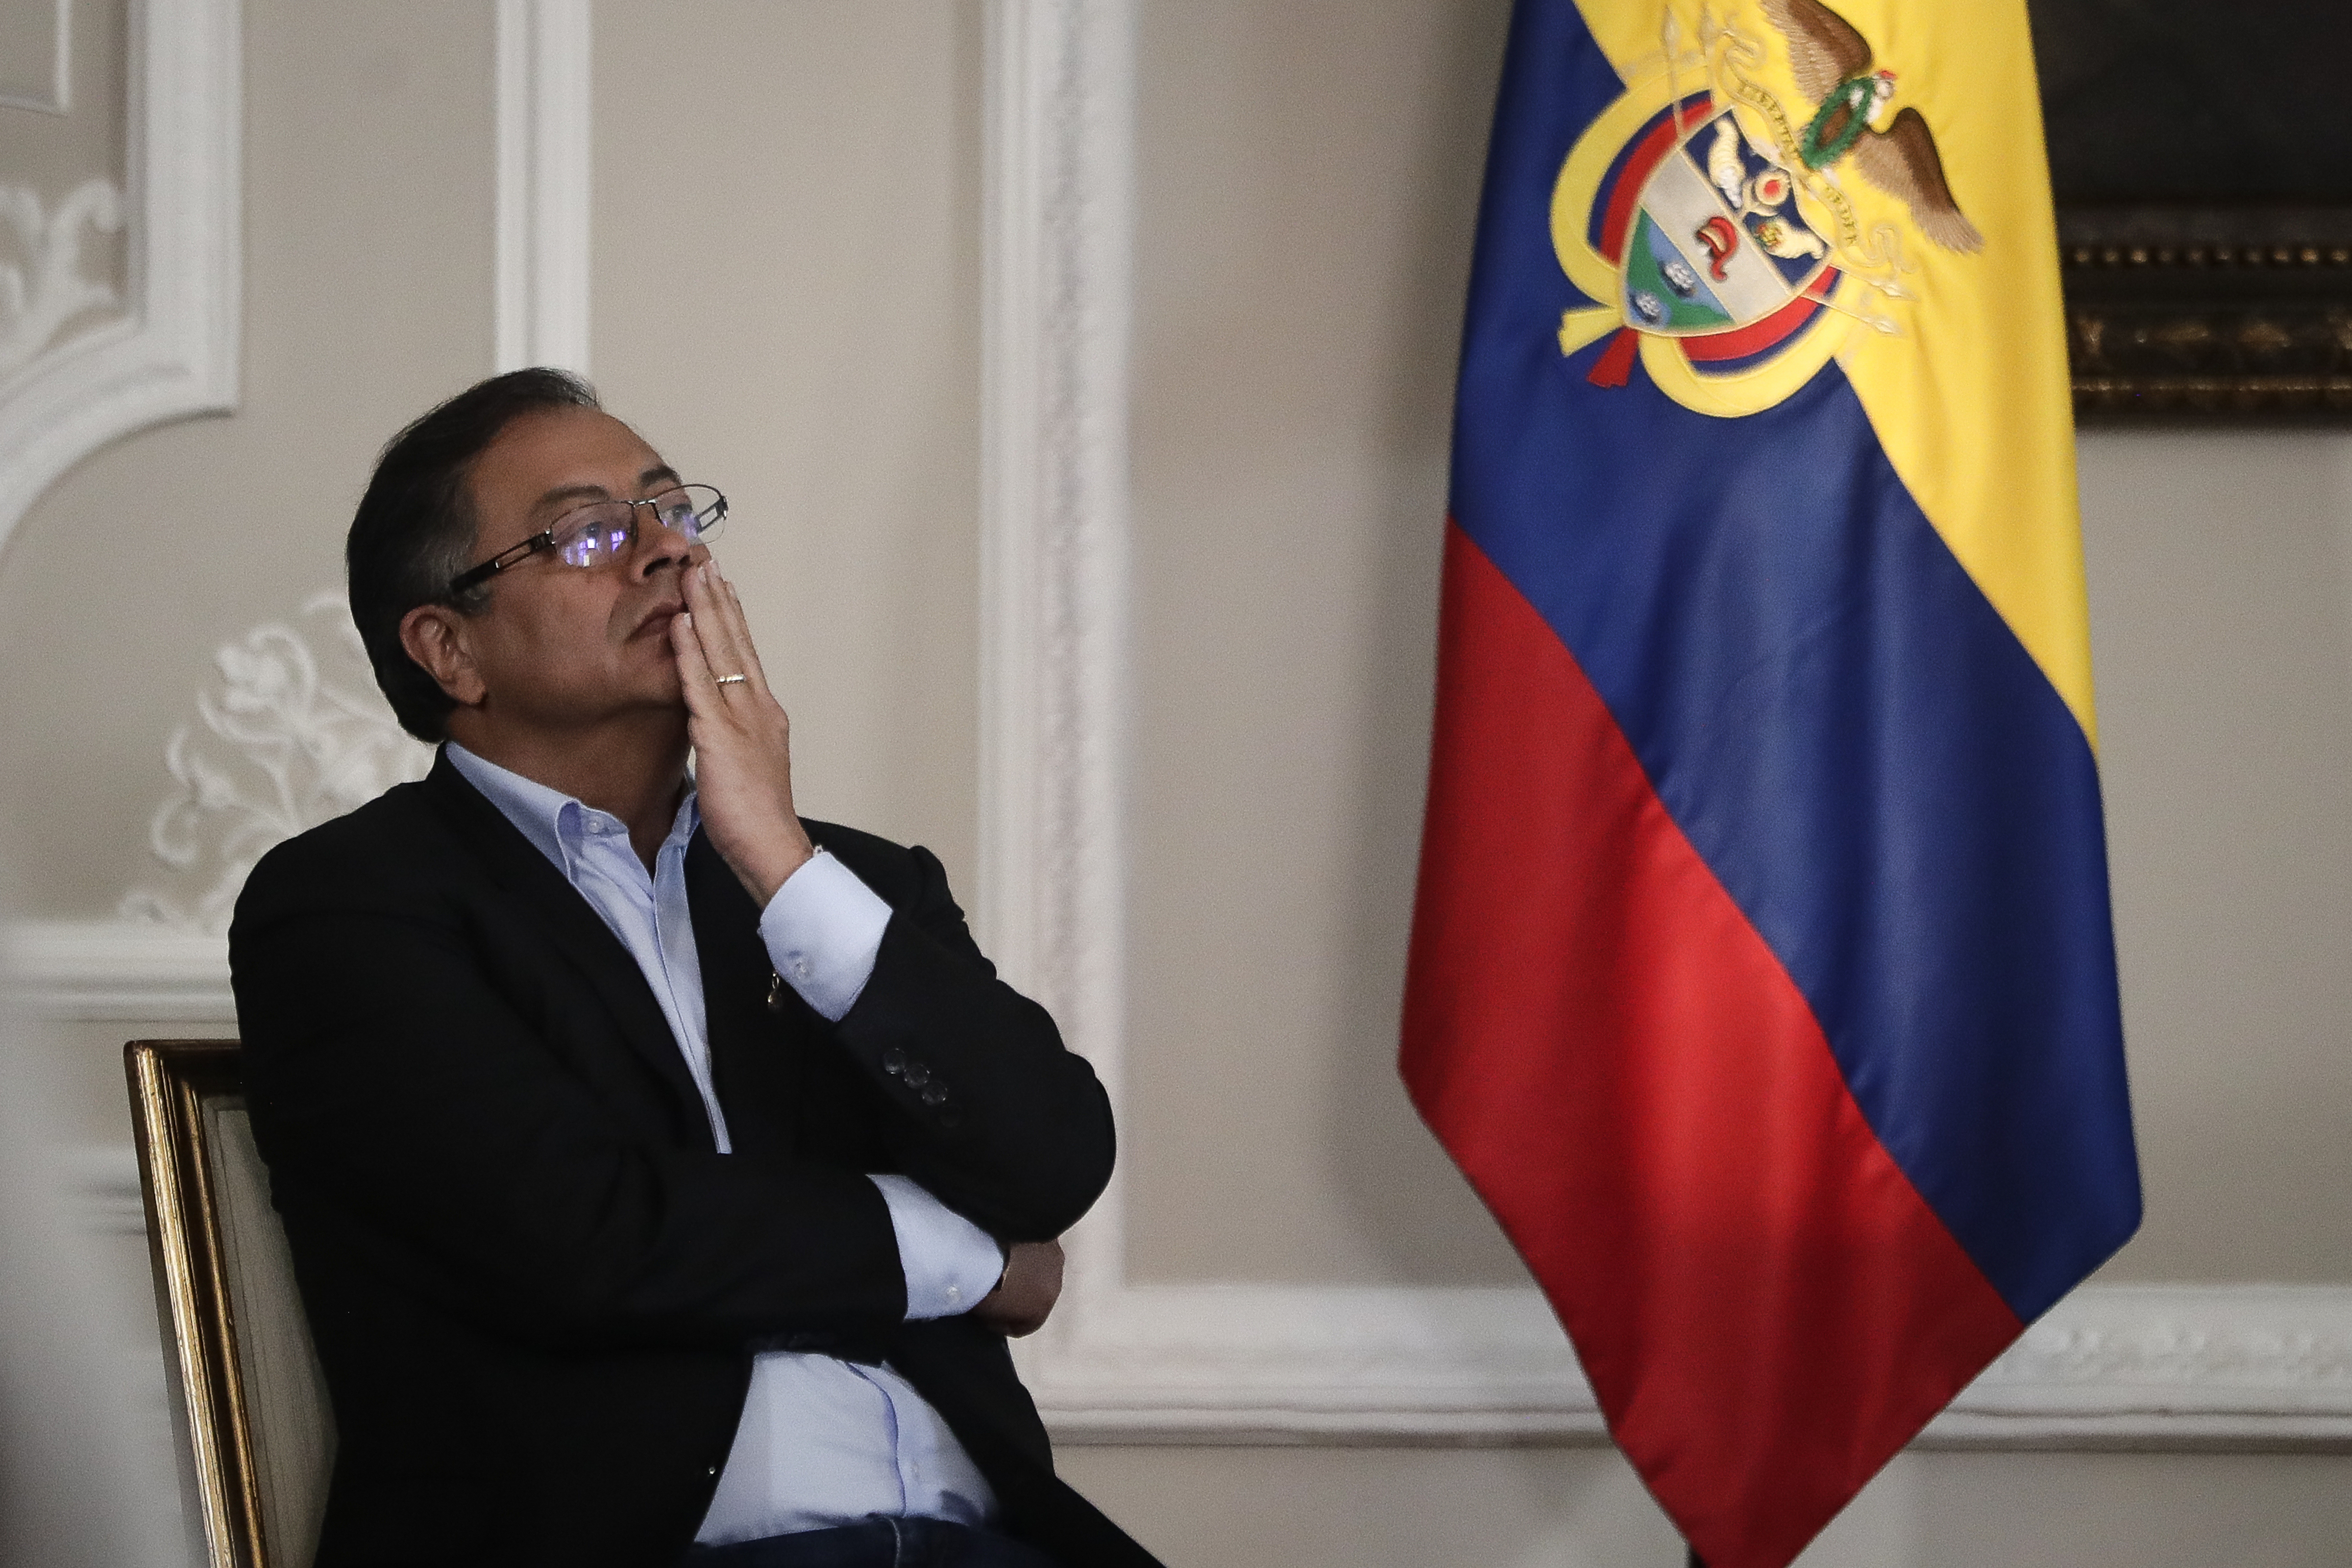 El presidente Gustavo Petro dice que lo amenazaron de muerte: pidió al fiscal investigar activista que prometió mandarlo “al valle de los acostados”